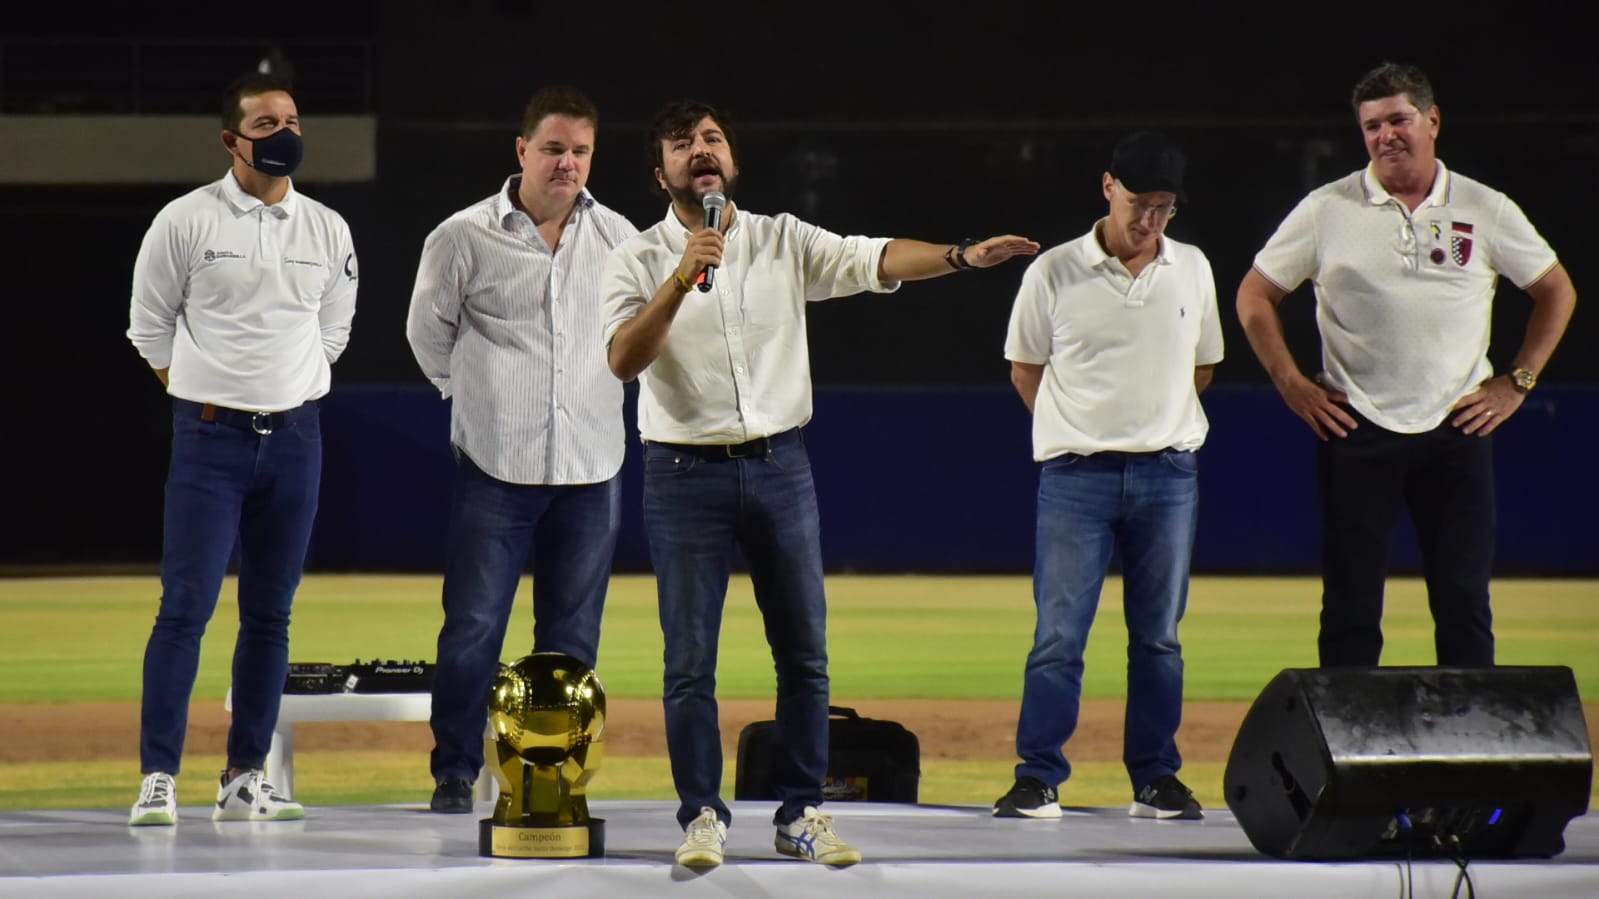 El Alcalde Jaime Pumarejo saludando a los campeones.